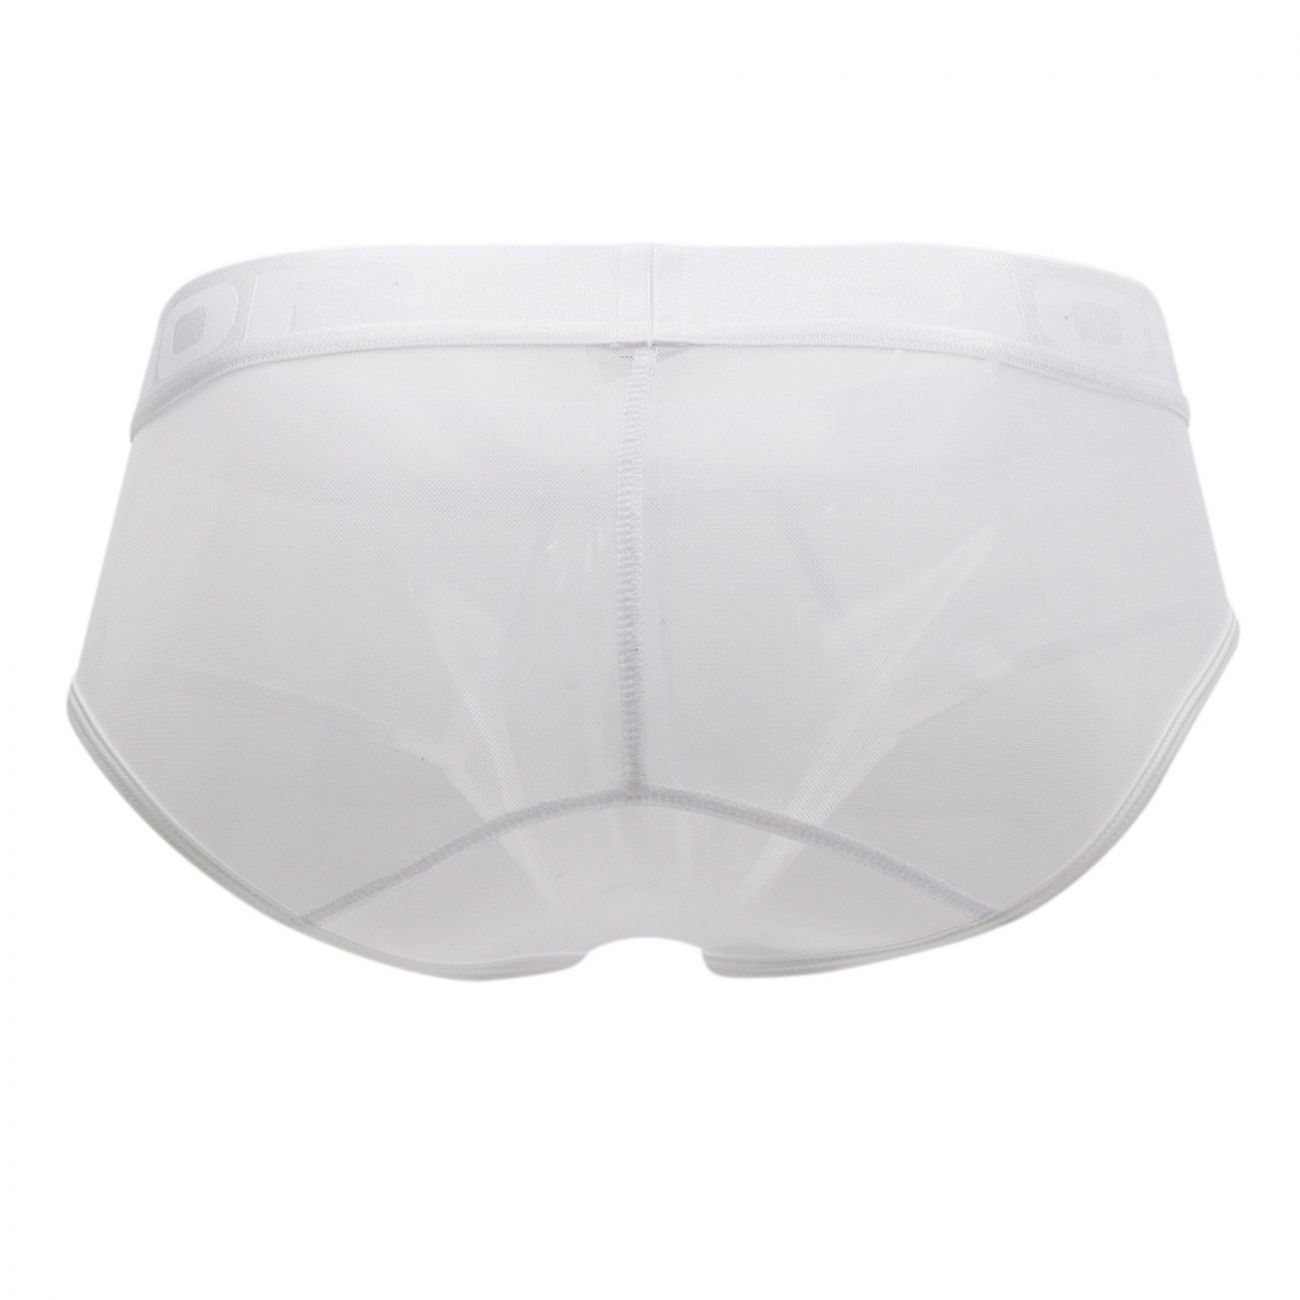 Mens Underwear: JOR 0883 Mesh Briefs | eBay